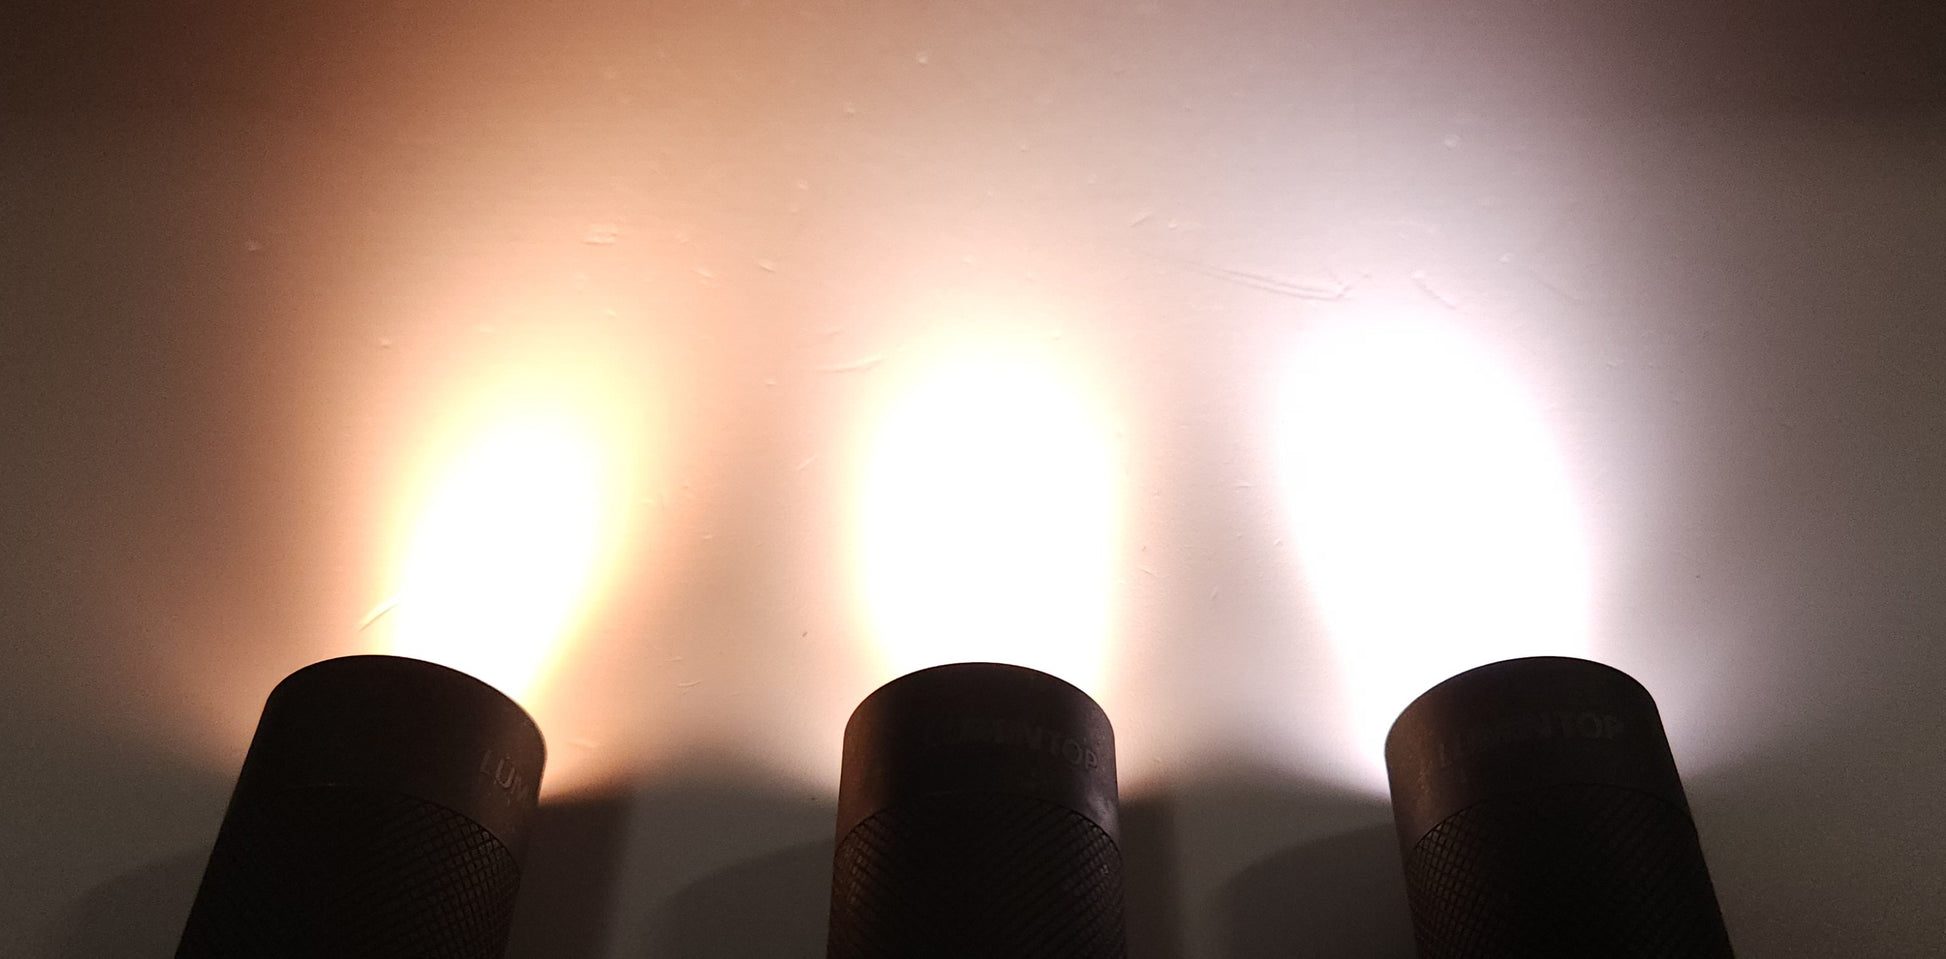 Lumintop FW3A Titanium (Stonewashed) LED Flashlight